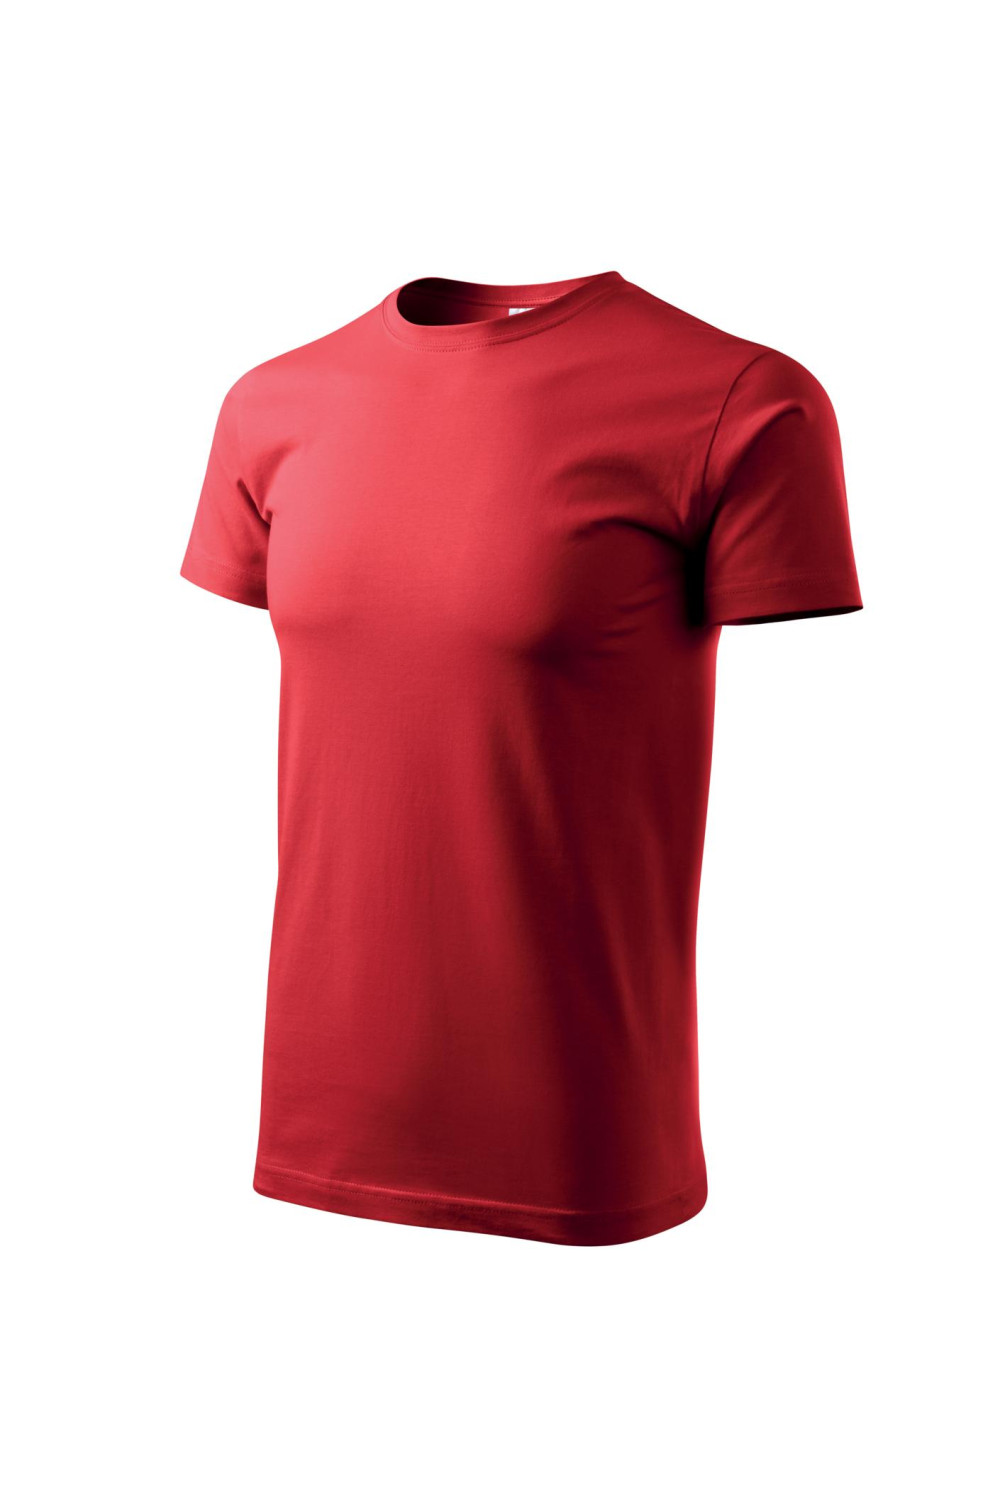 Koszulka męska 100% bawełna BASIC 129  kolor czerwony